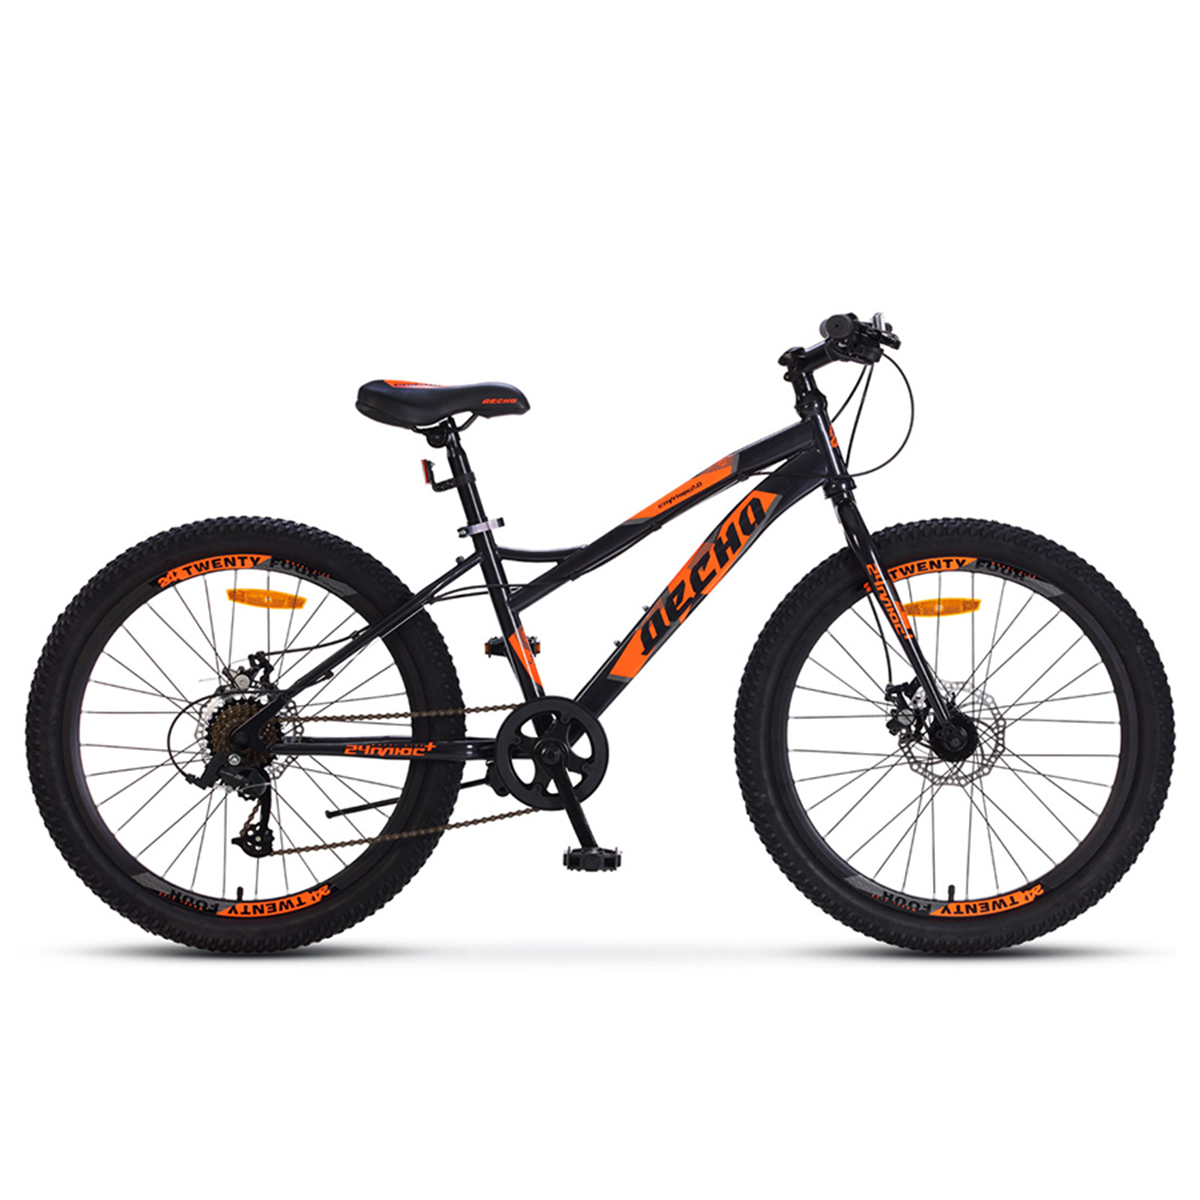 Десна 24. Велосипед 24md-633. Велосипед Десна 24. Подростковый горный (MTB) велосипед Десна Спутник 1.0 MD 20+ (2019). Велосипед стелс 24 оранжевый.